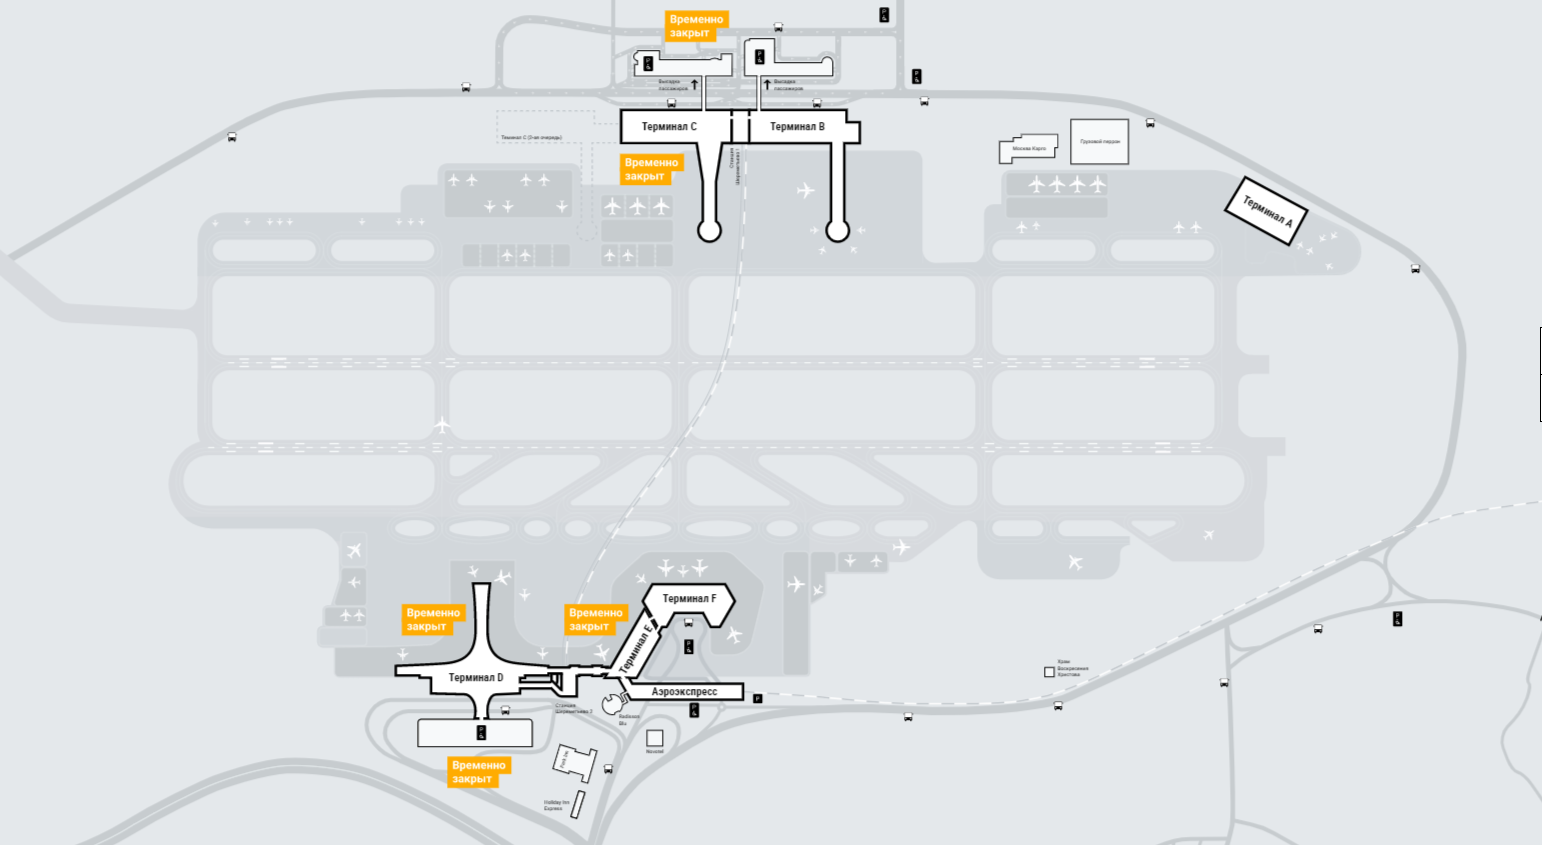 Шереметьево терминал b расписание. Схема аэропорта Шереметьево с терминалами. План Шереметьево аэропорт схема. План аэропорта Шереметьево терминал b. План аэропорта Шереметьево с терминалами.